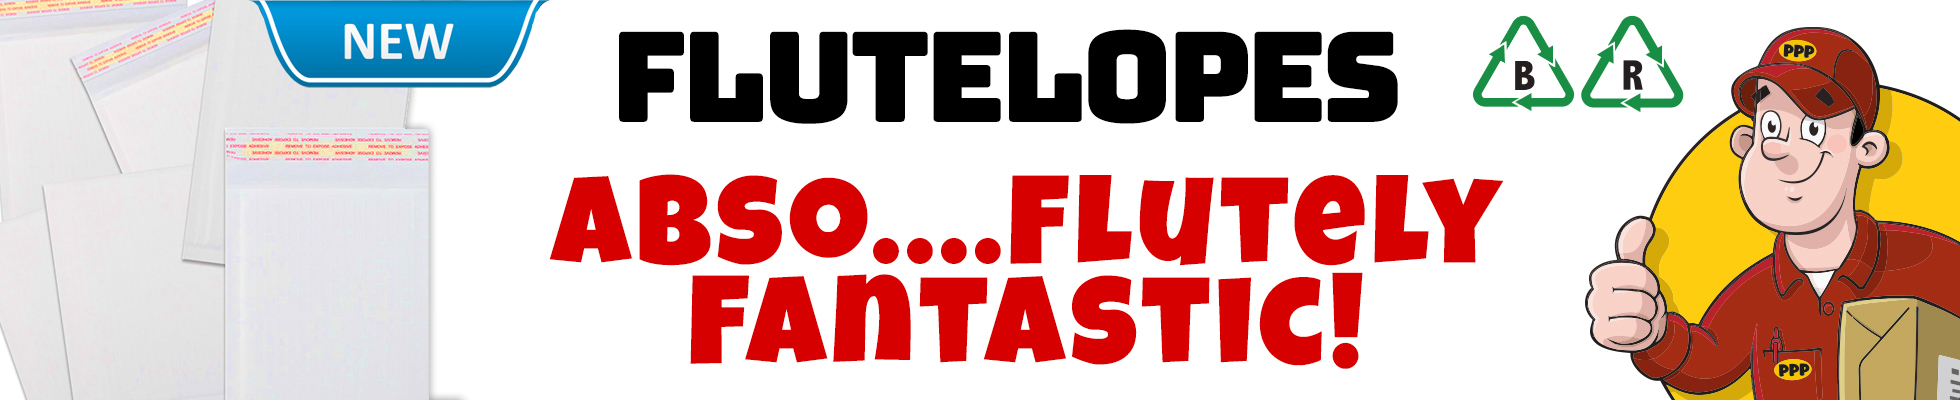 Flutelopes